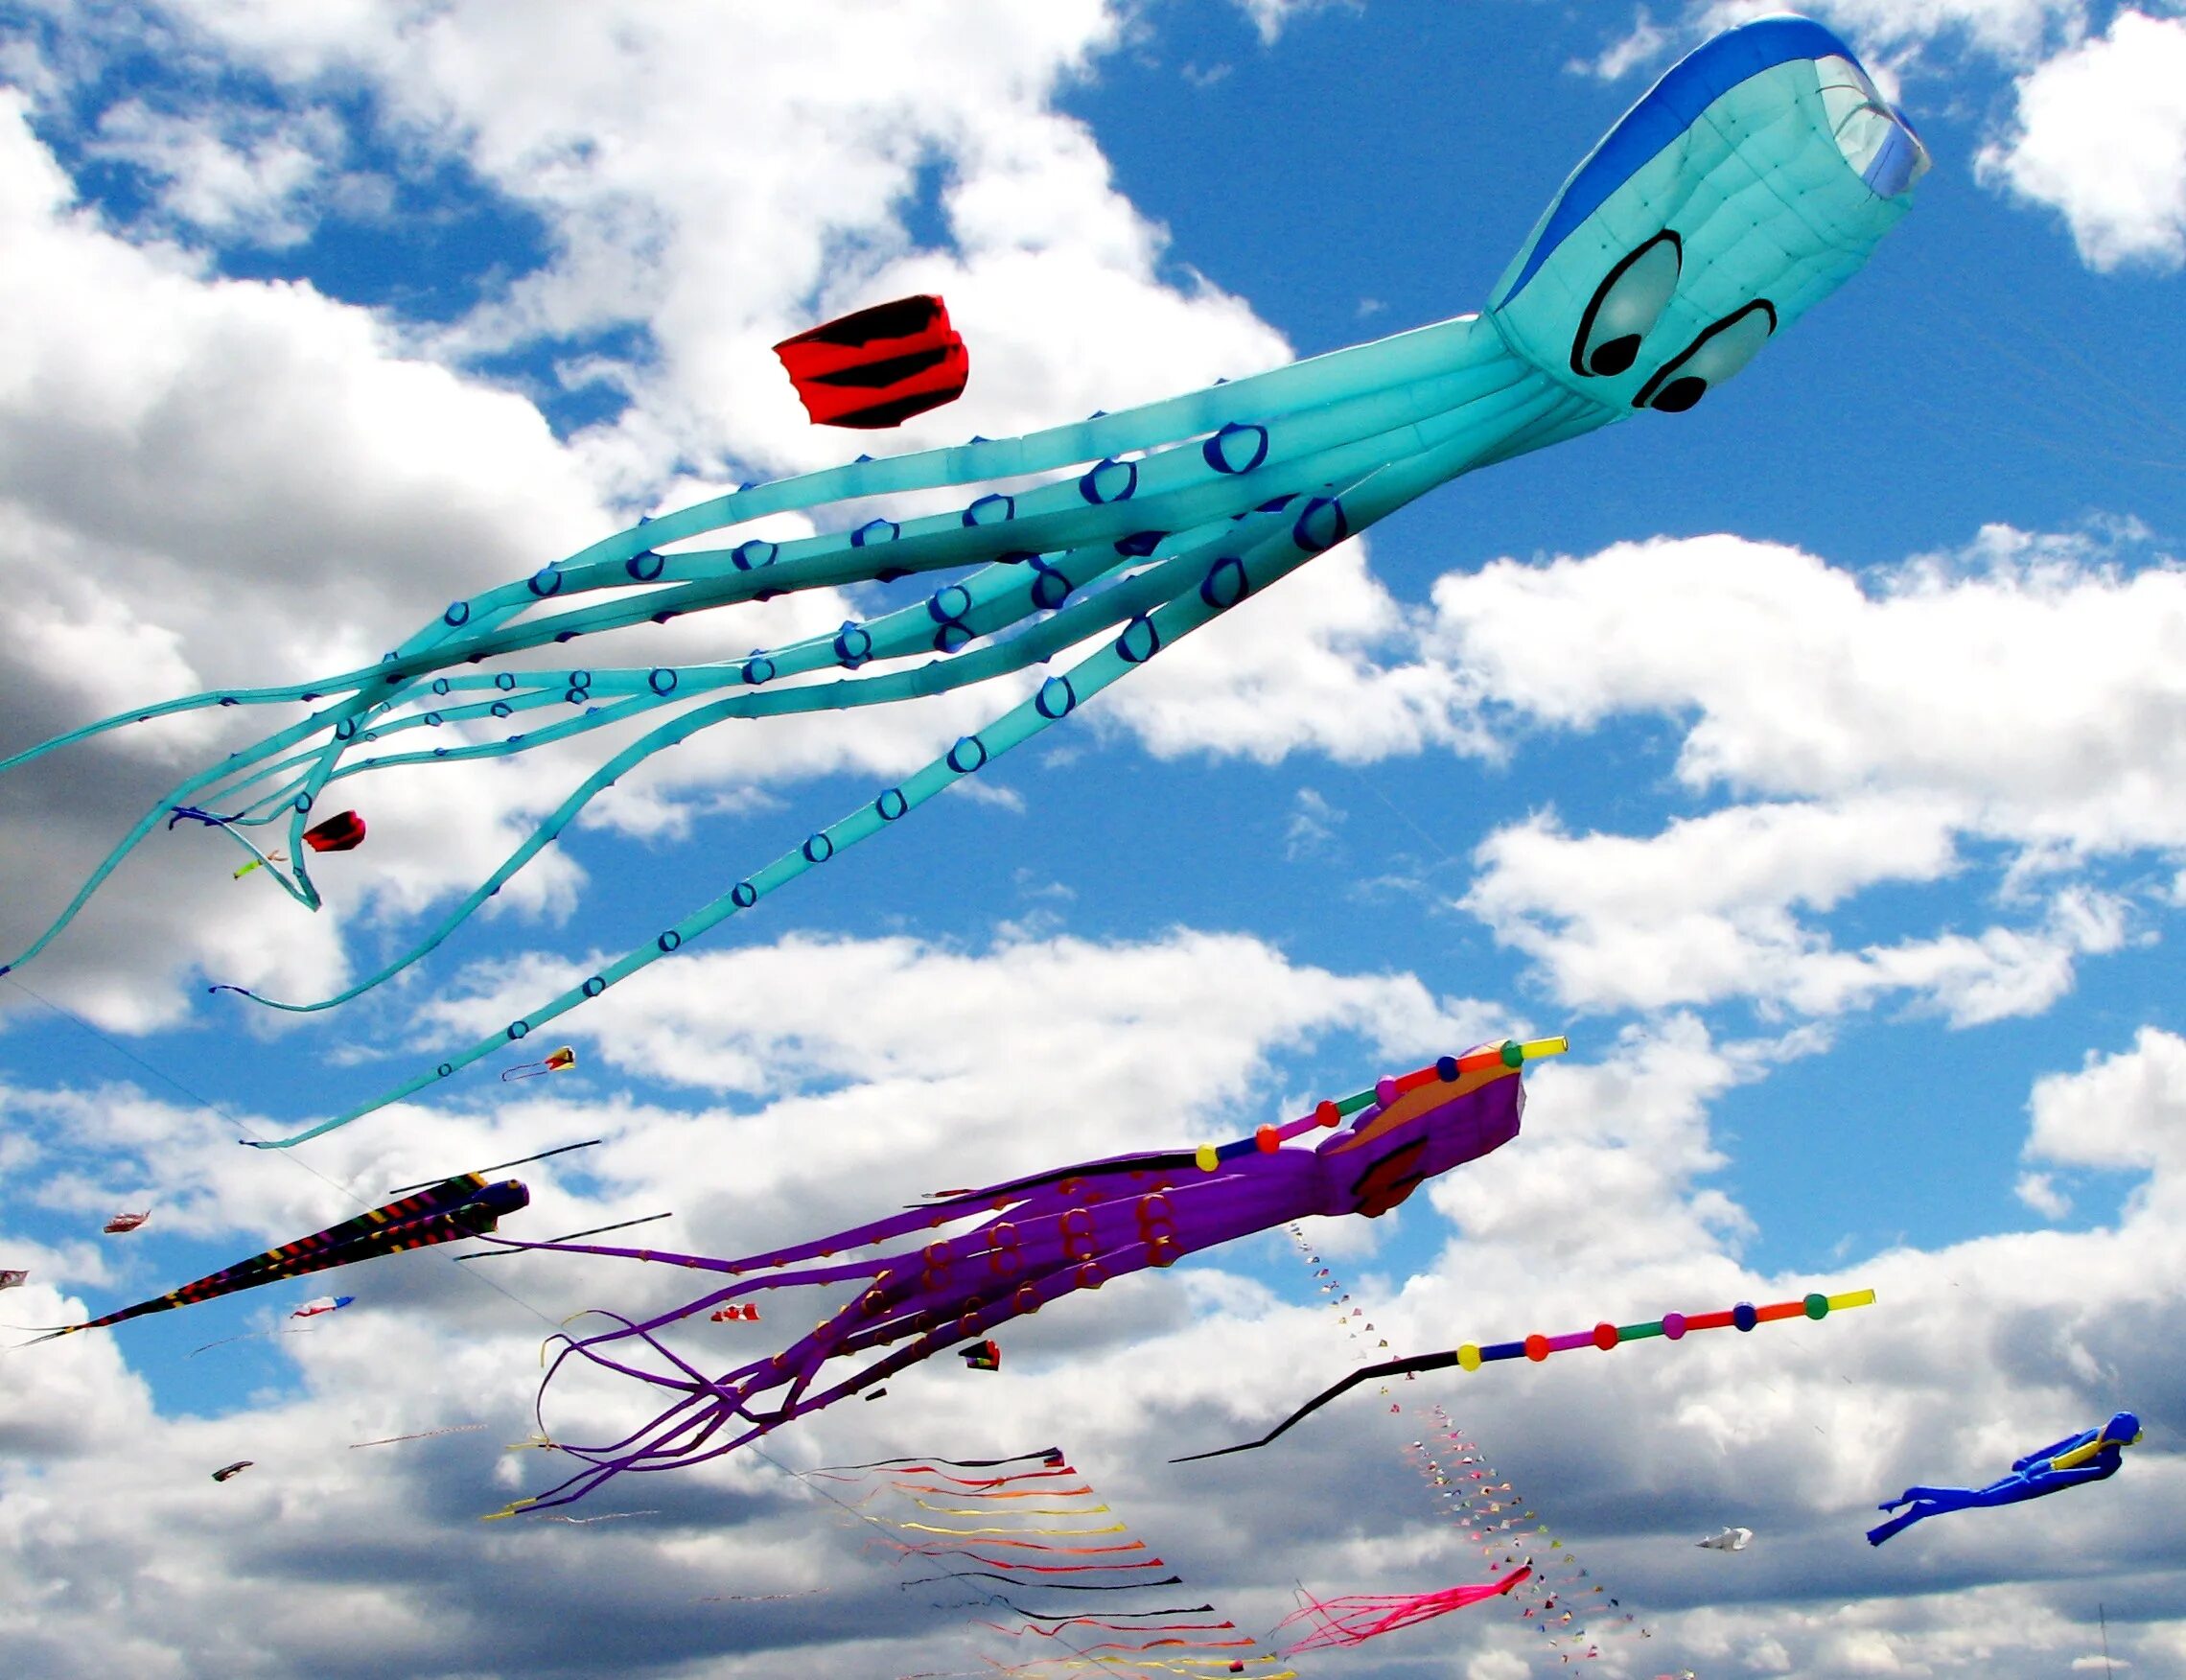 Про воздушных змеев. Воздушный змей. День воздушных змеев и бумажных самолетиков. Воздушный змей - летательный аппарат. Запуск воздушных змеев.